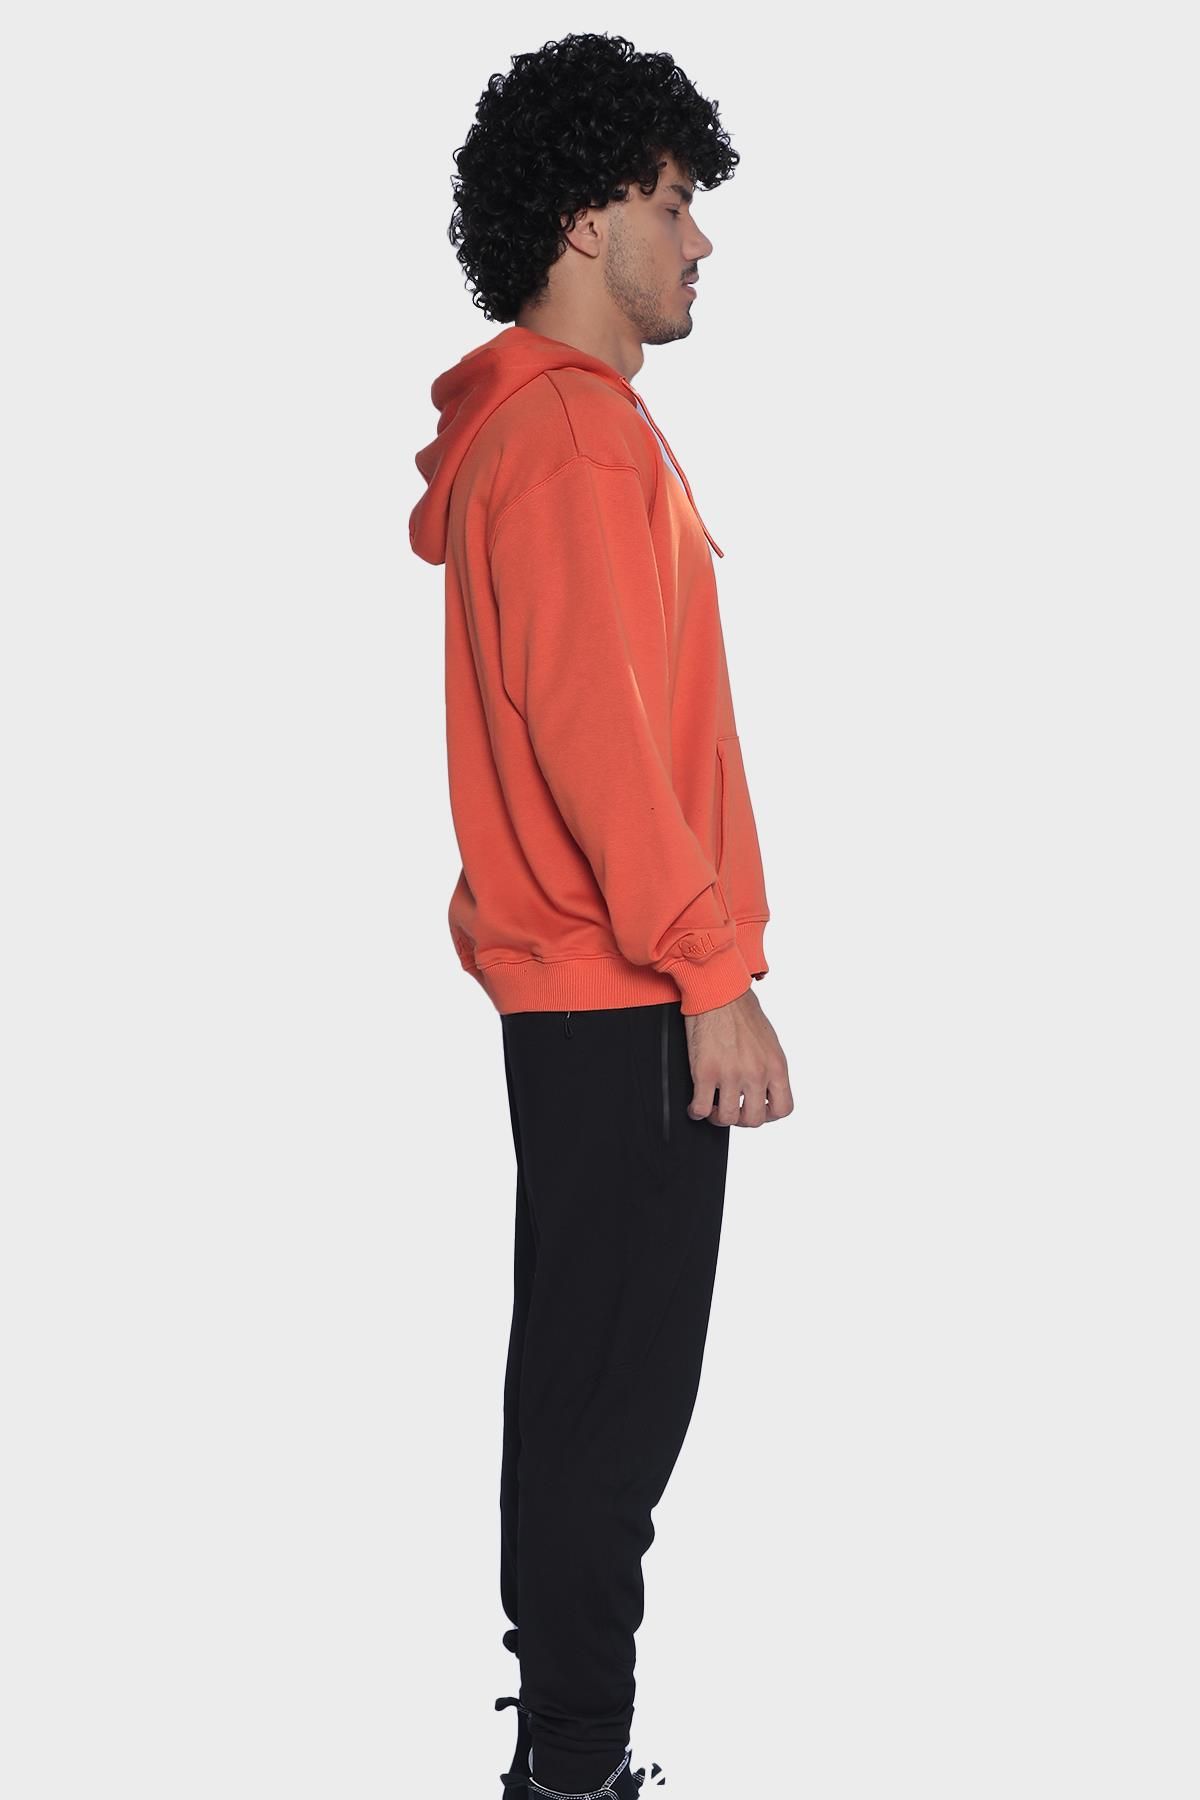 Mens hoodie, long sleeve and zippered sweatshirt - Orange